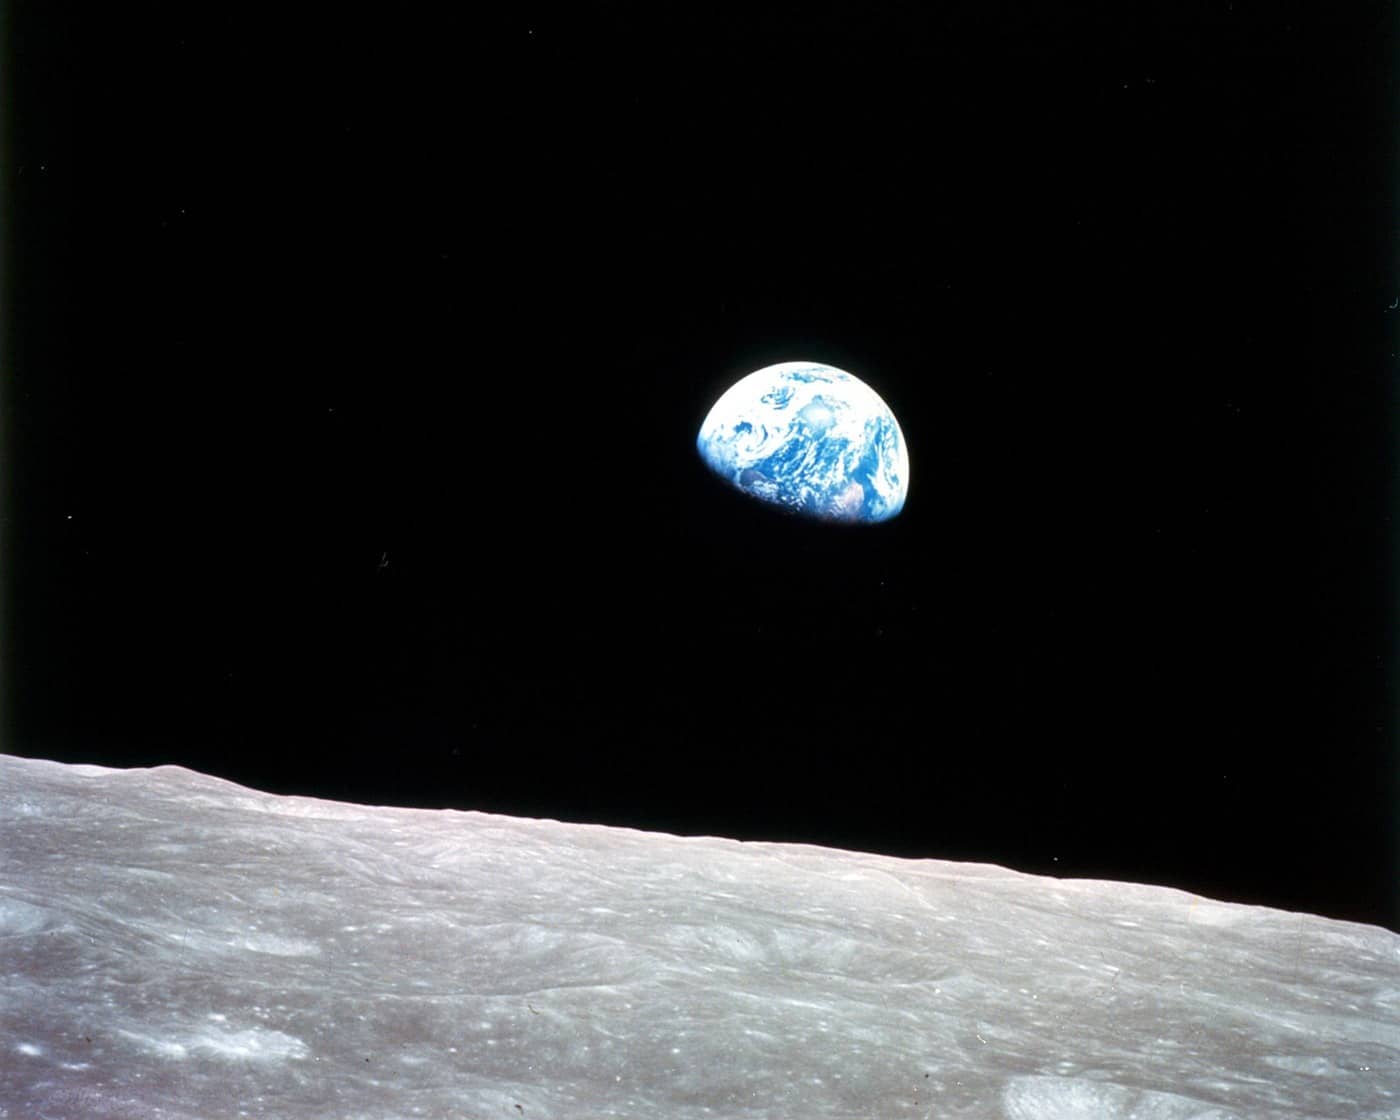 Während der Umrundung des Mondes sahen die Astronauten von Apollo 8 die halb beleuchtete Erde über dem Mondhorizont aufgehen